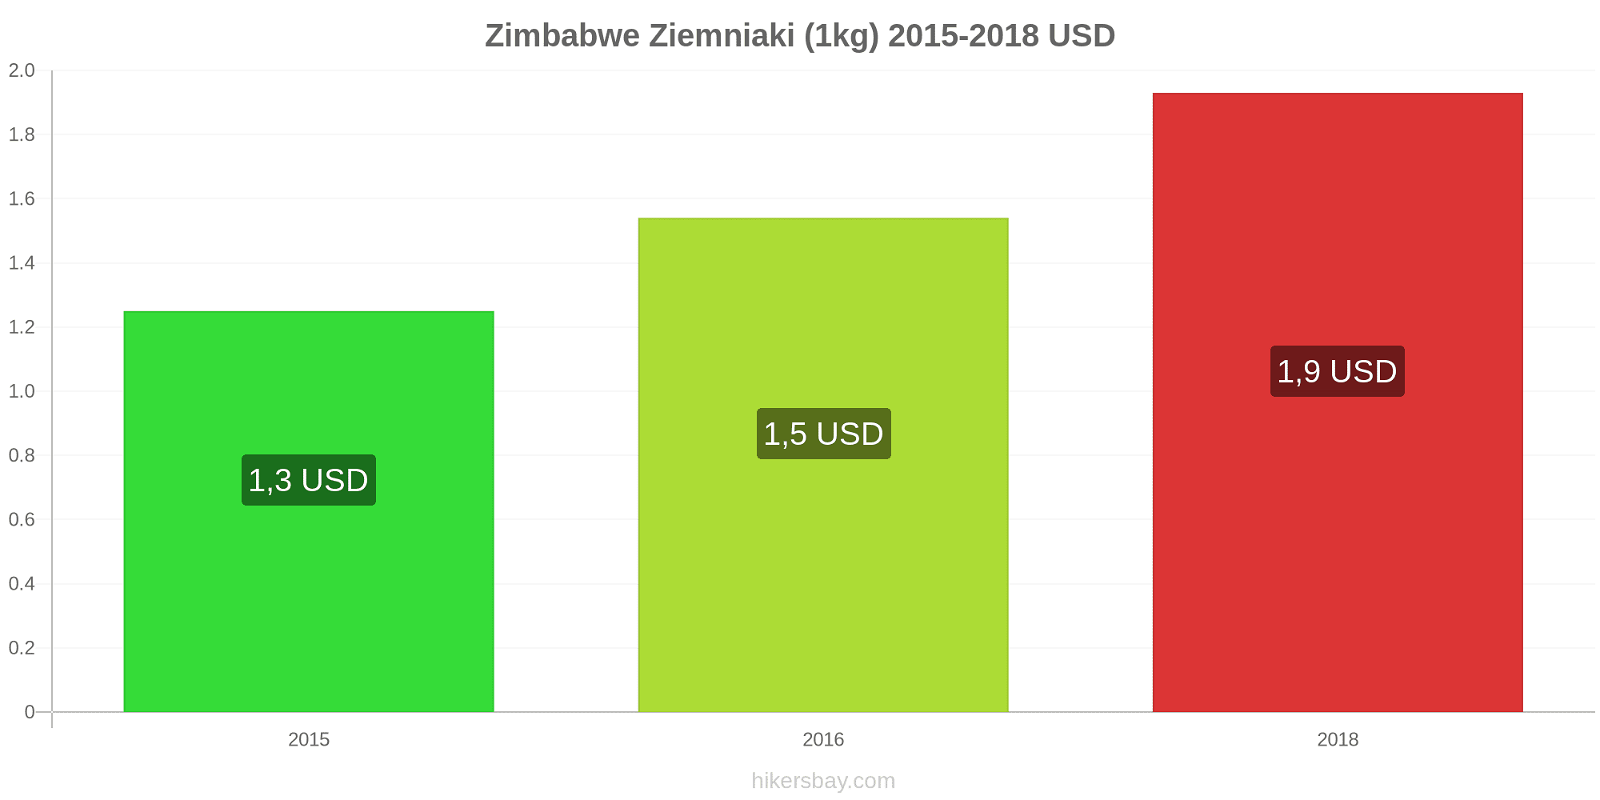 Zimbabwe zmiany cen Ziemniaki (1kg) hikersbay.com